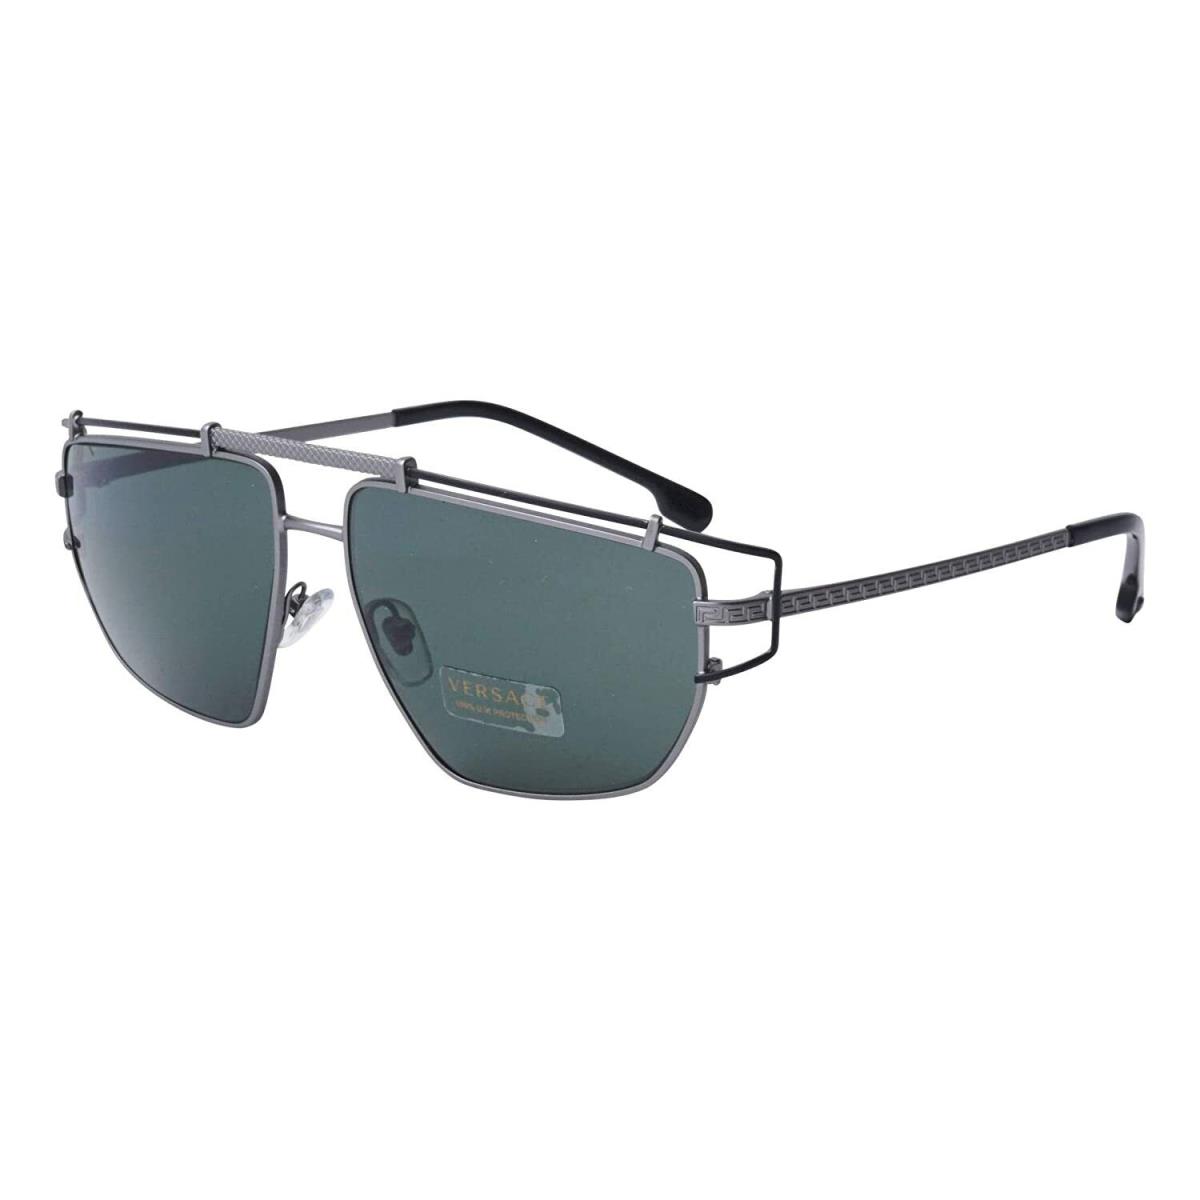 Versace Unisex Sunglasses VE2202 143771 57mm Gunmetal / Green Lens